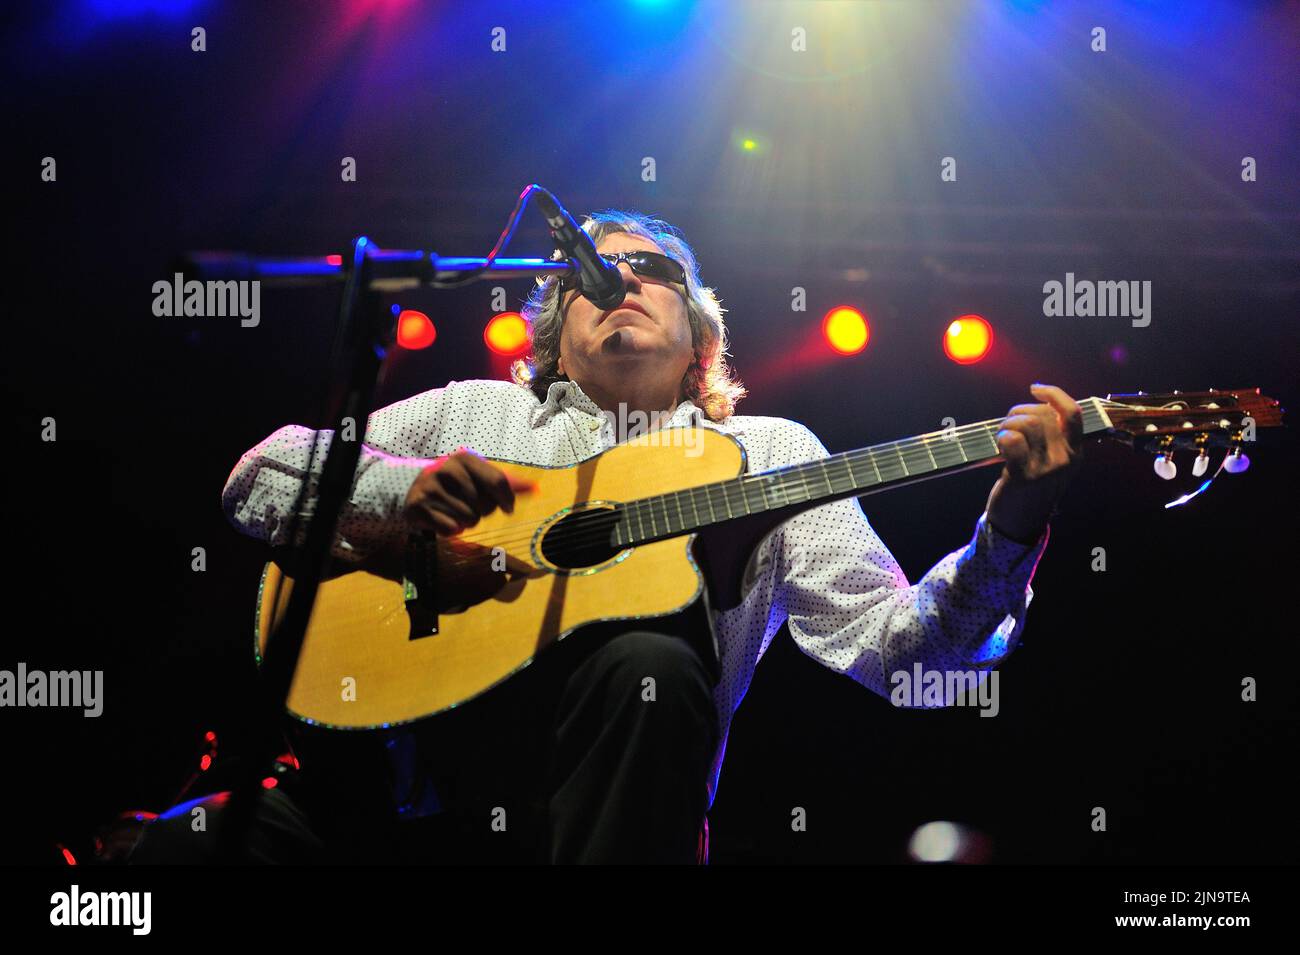 Der Puerto-ricanische Sänger und virtuose Gitarrist Jose Feliciano, der aufgrund eines angeborenen Glaukoms dauerhaft blind geboren wurde, wird während eines 'Live'-Konzerts auf der Bühne gezeigt. Jose Feliciano (geboren am 10. September 1945) ist ein Puerto-ricanischer virtuoser Gitarrist, Sänger und Komponist, Foto Kazimierz Jurewicz Stockfoto